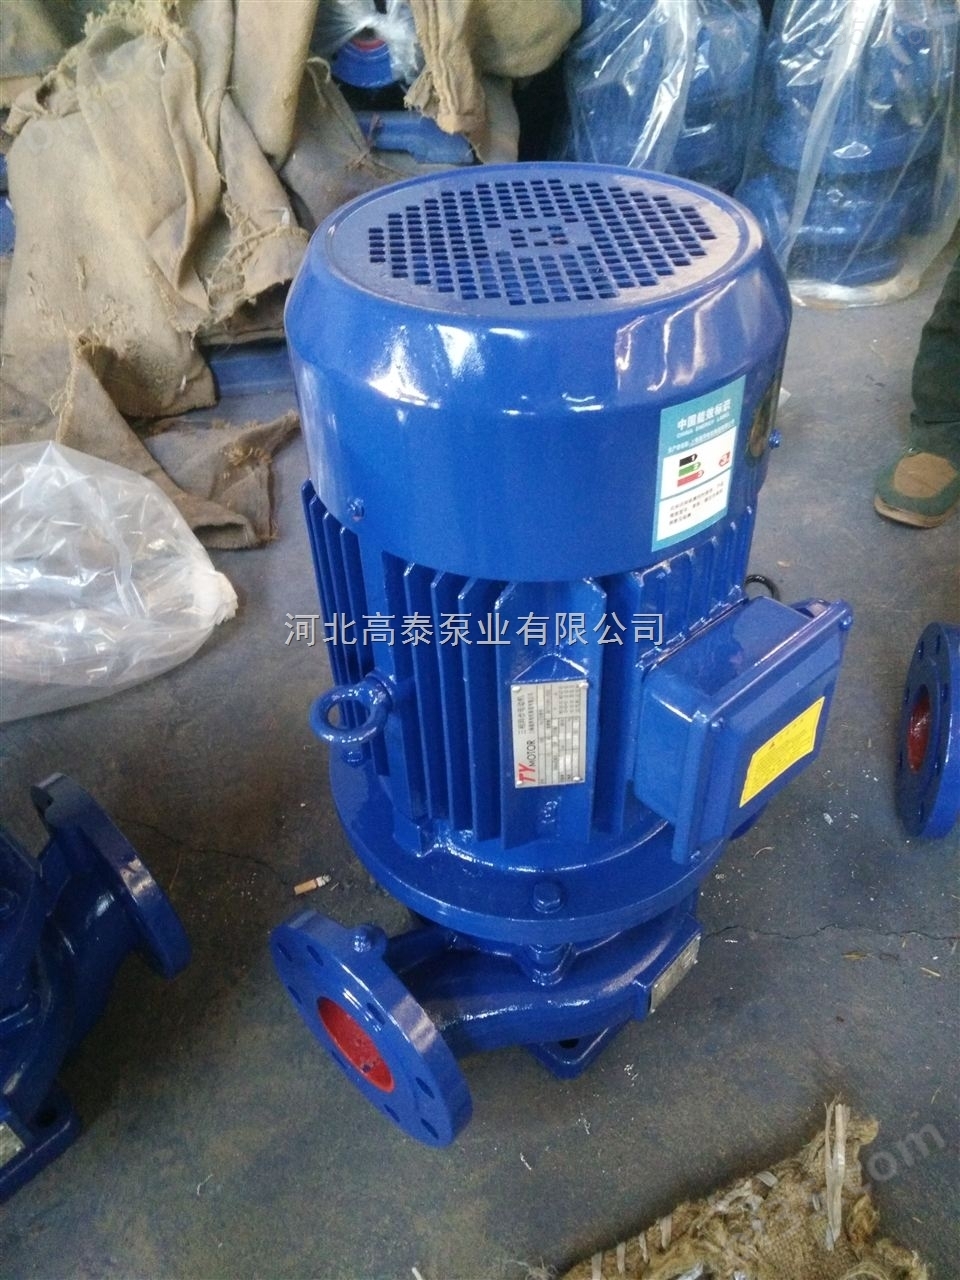 管道清水泵ISG80-315I立式管道泵厂家